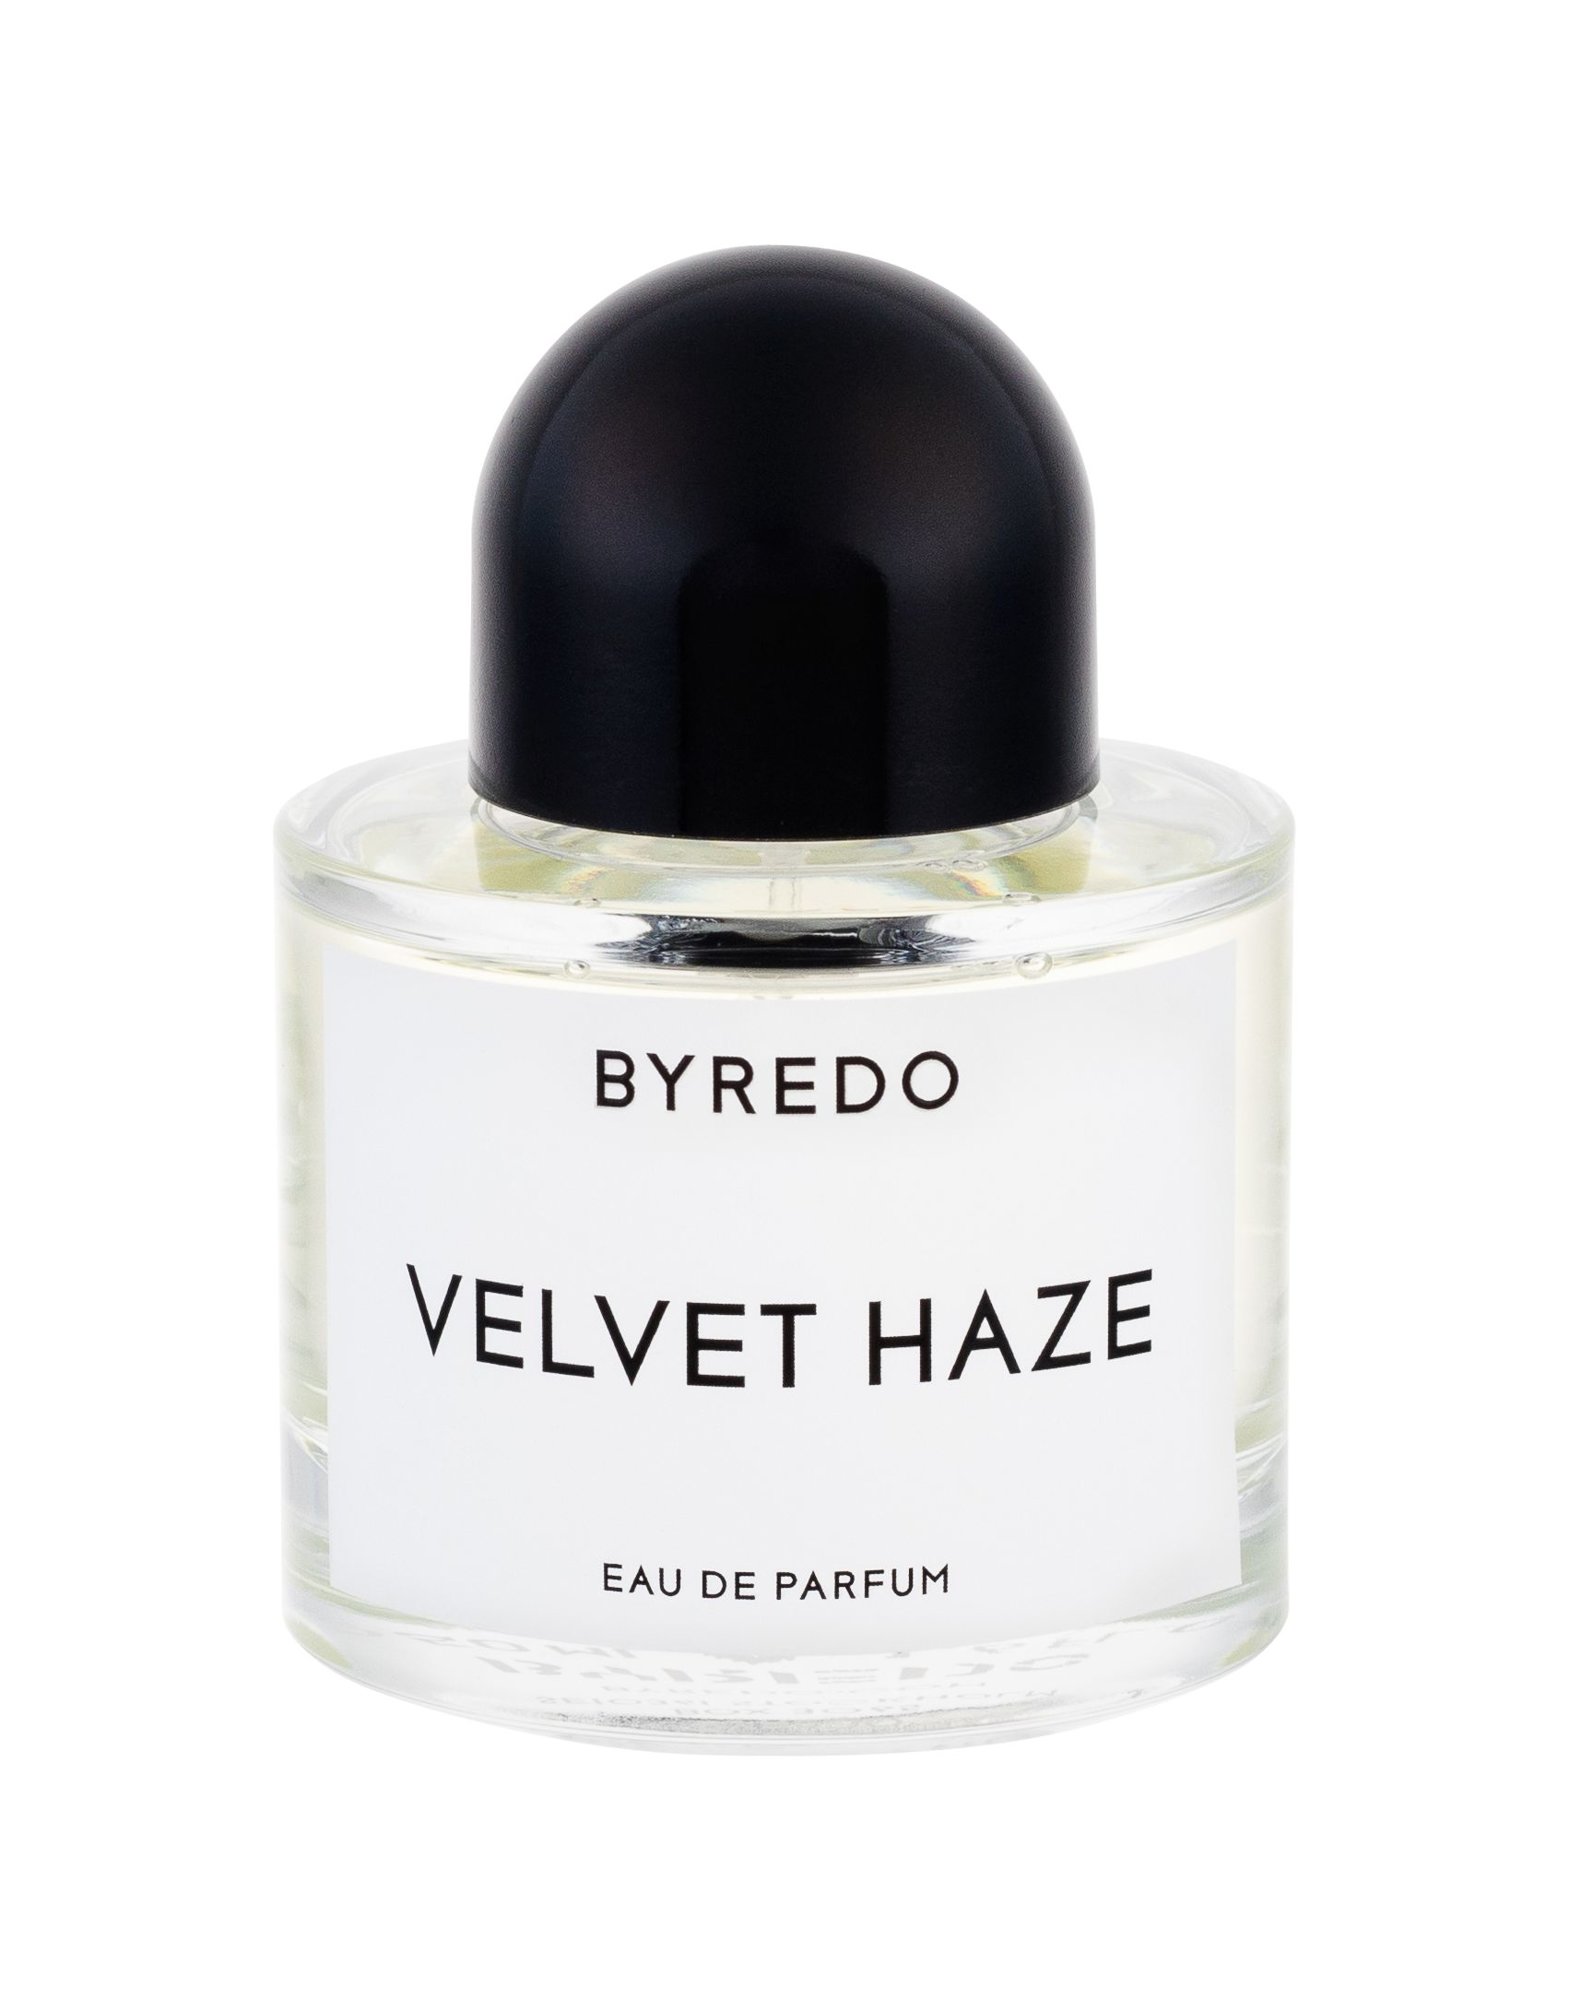 BYREDO Velvet Haze, EDP 50ml